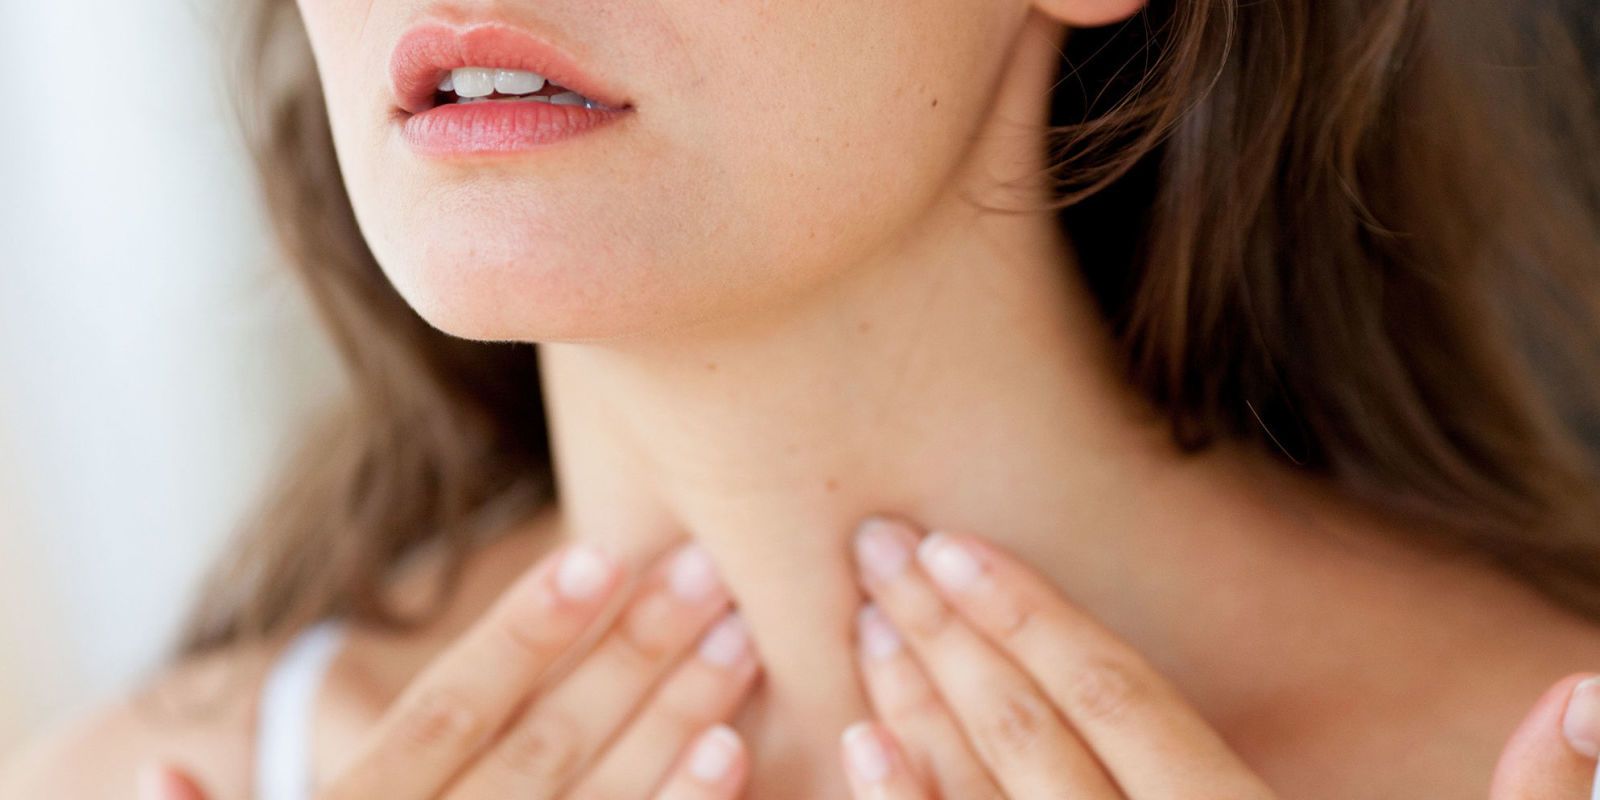 thyroid issues in women